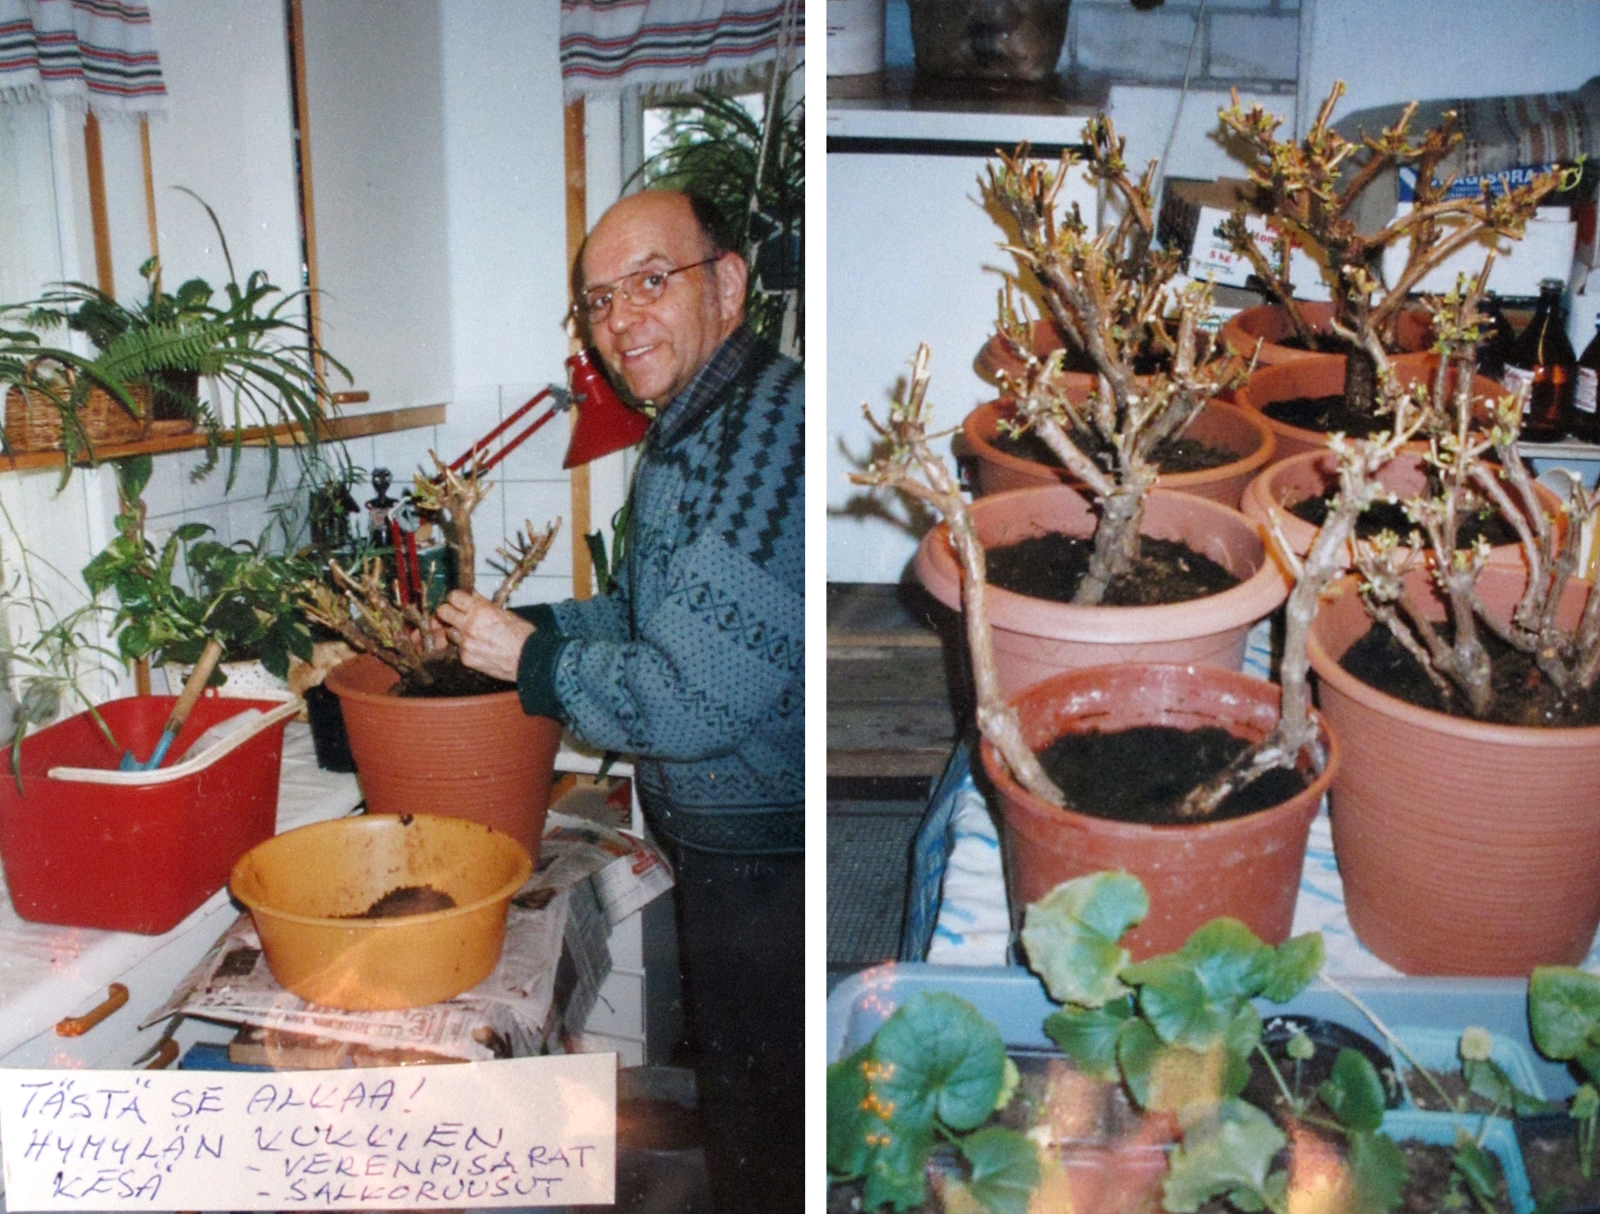 Vuonna 1999 Markku kykeni vielä hoitoleikkaamaan silloin hieman yli kymmenvuotiaat kasviyksilöt. Oikeanpuoleisessa kuvassa näkyykin jo useampi kasviyksilö.